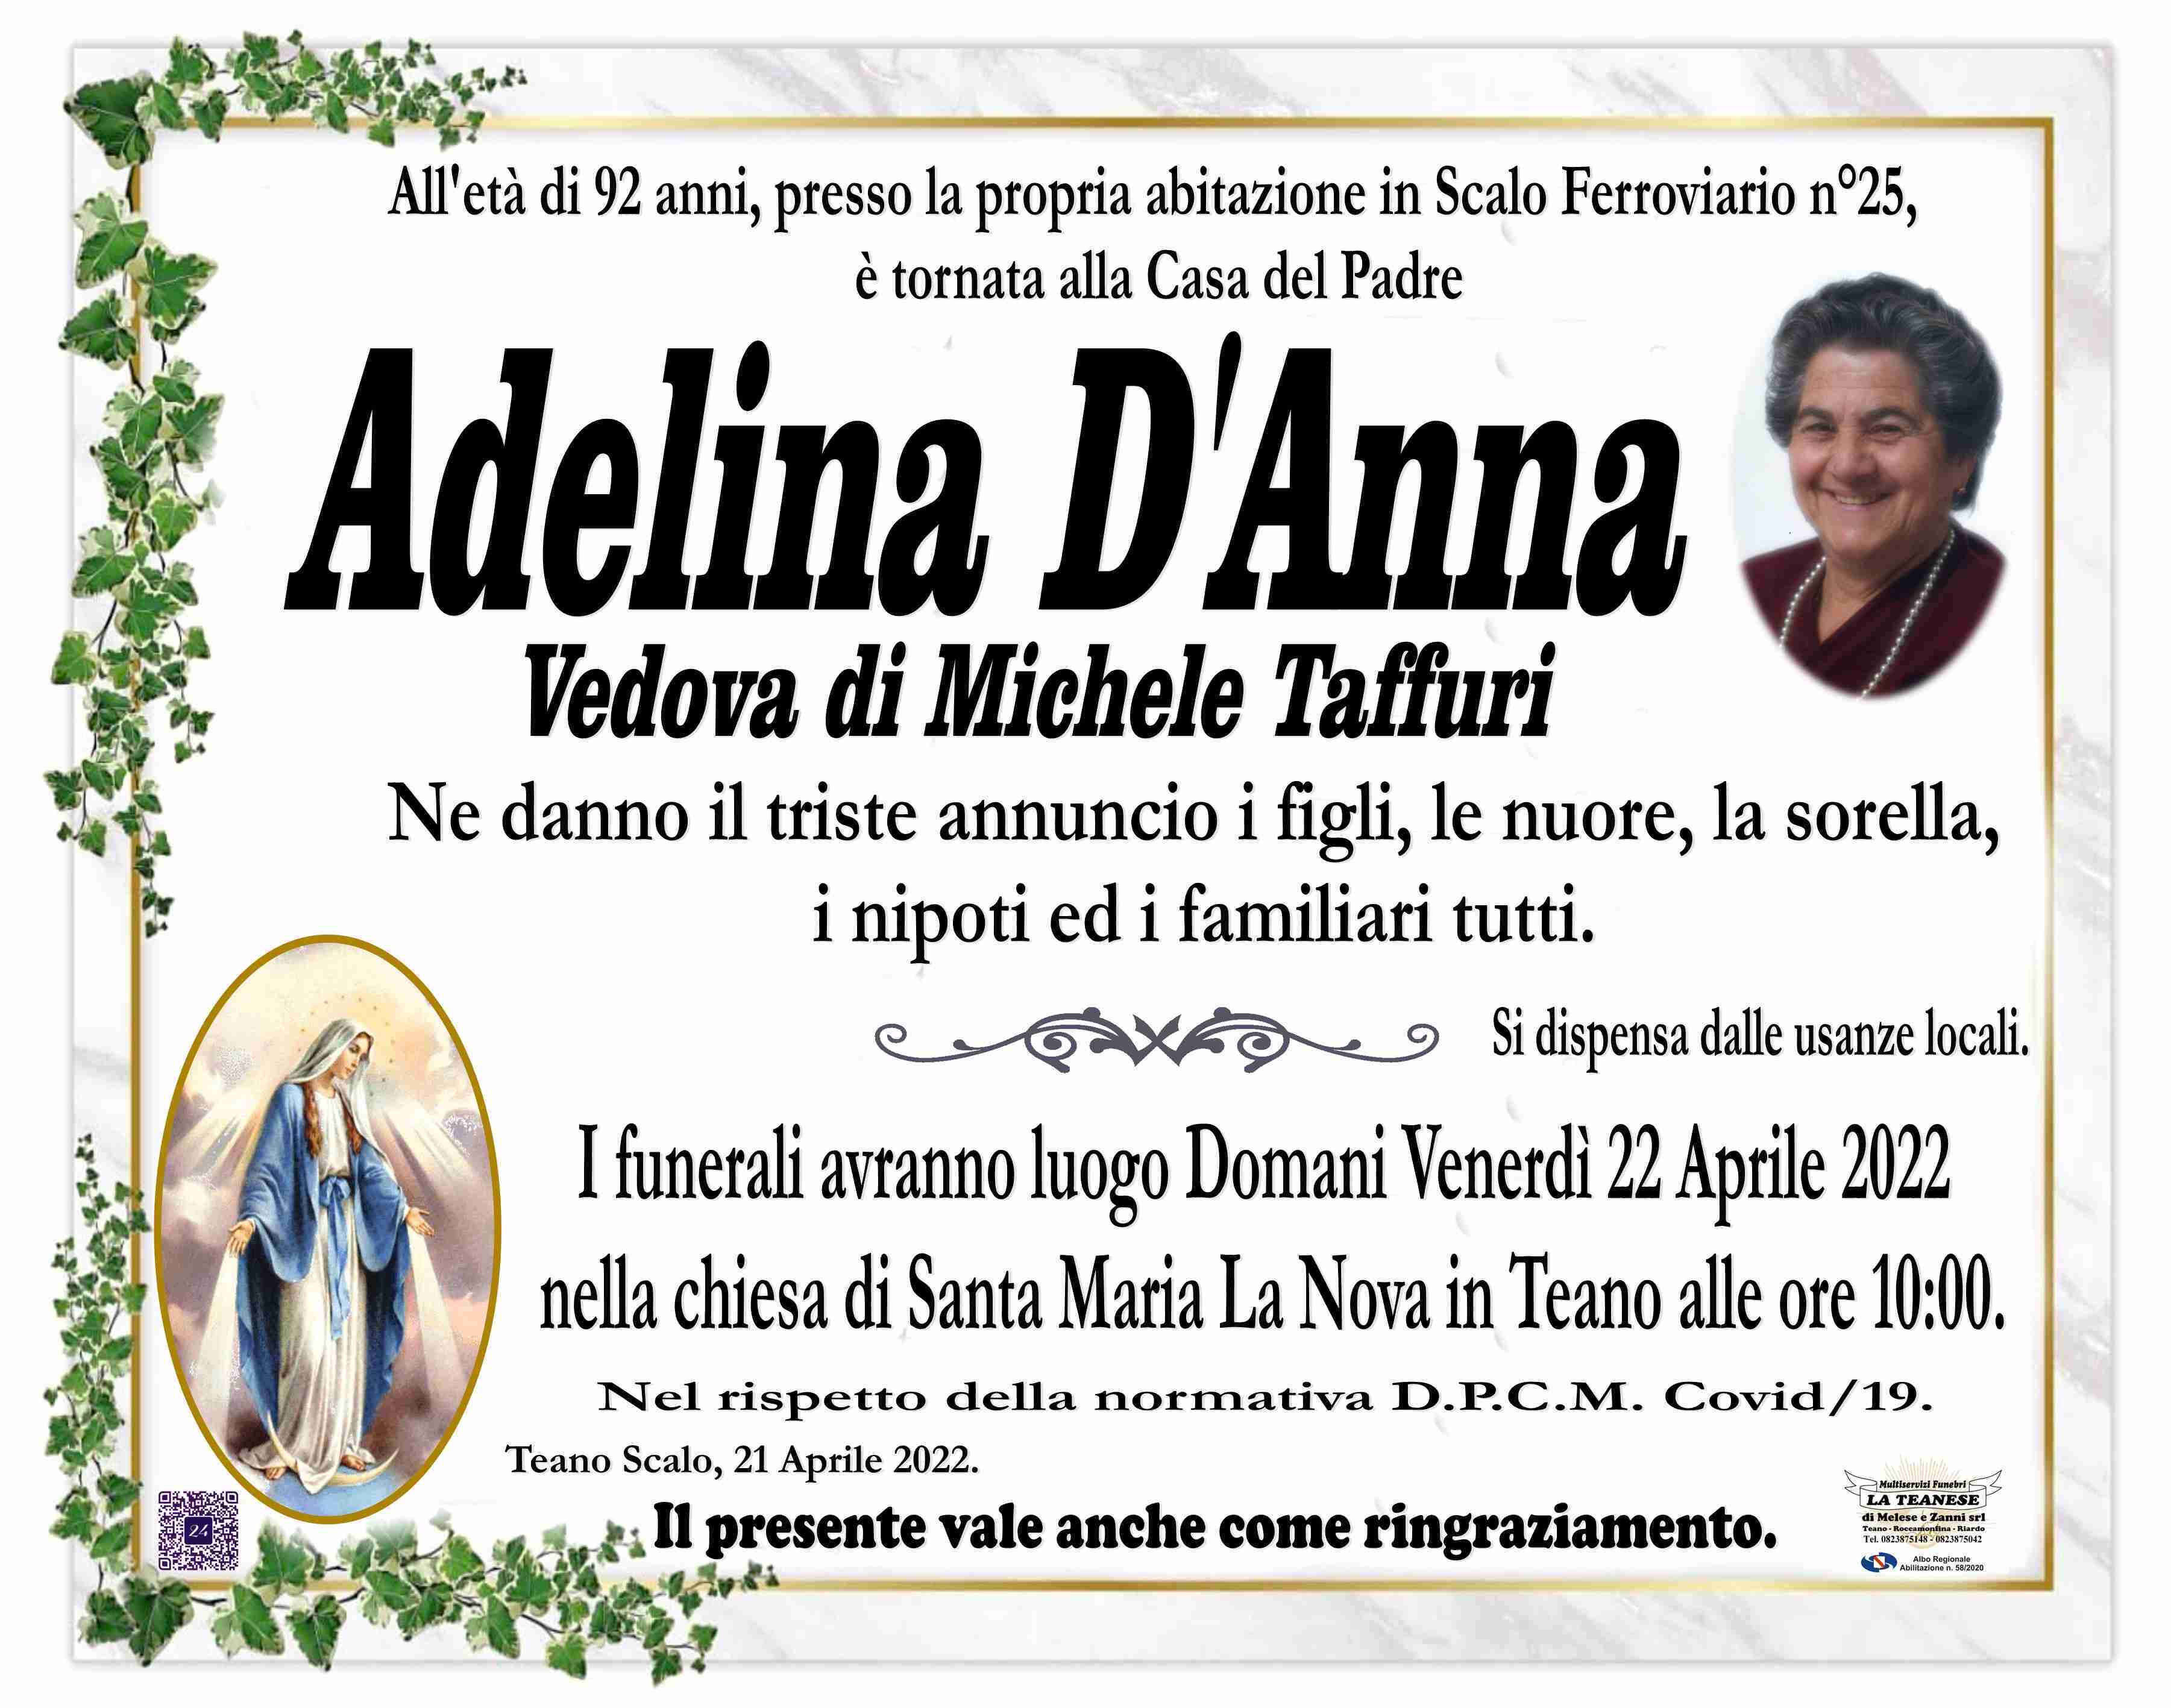 Adelina D'Anna